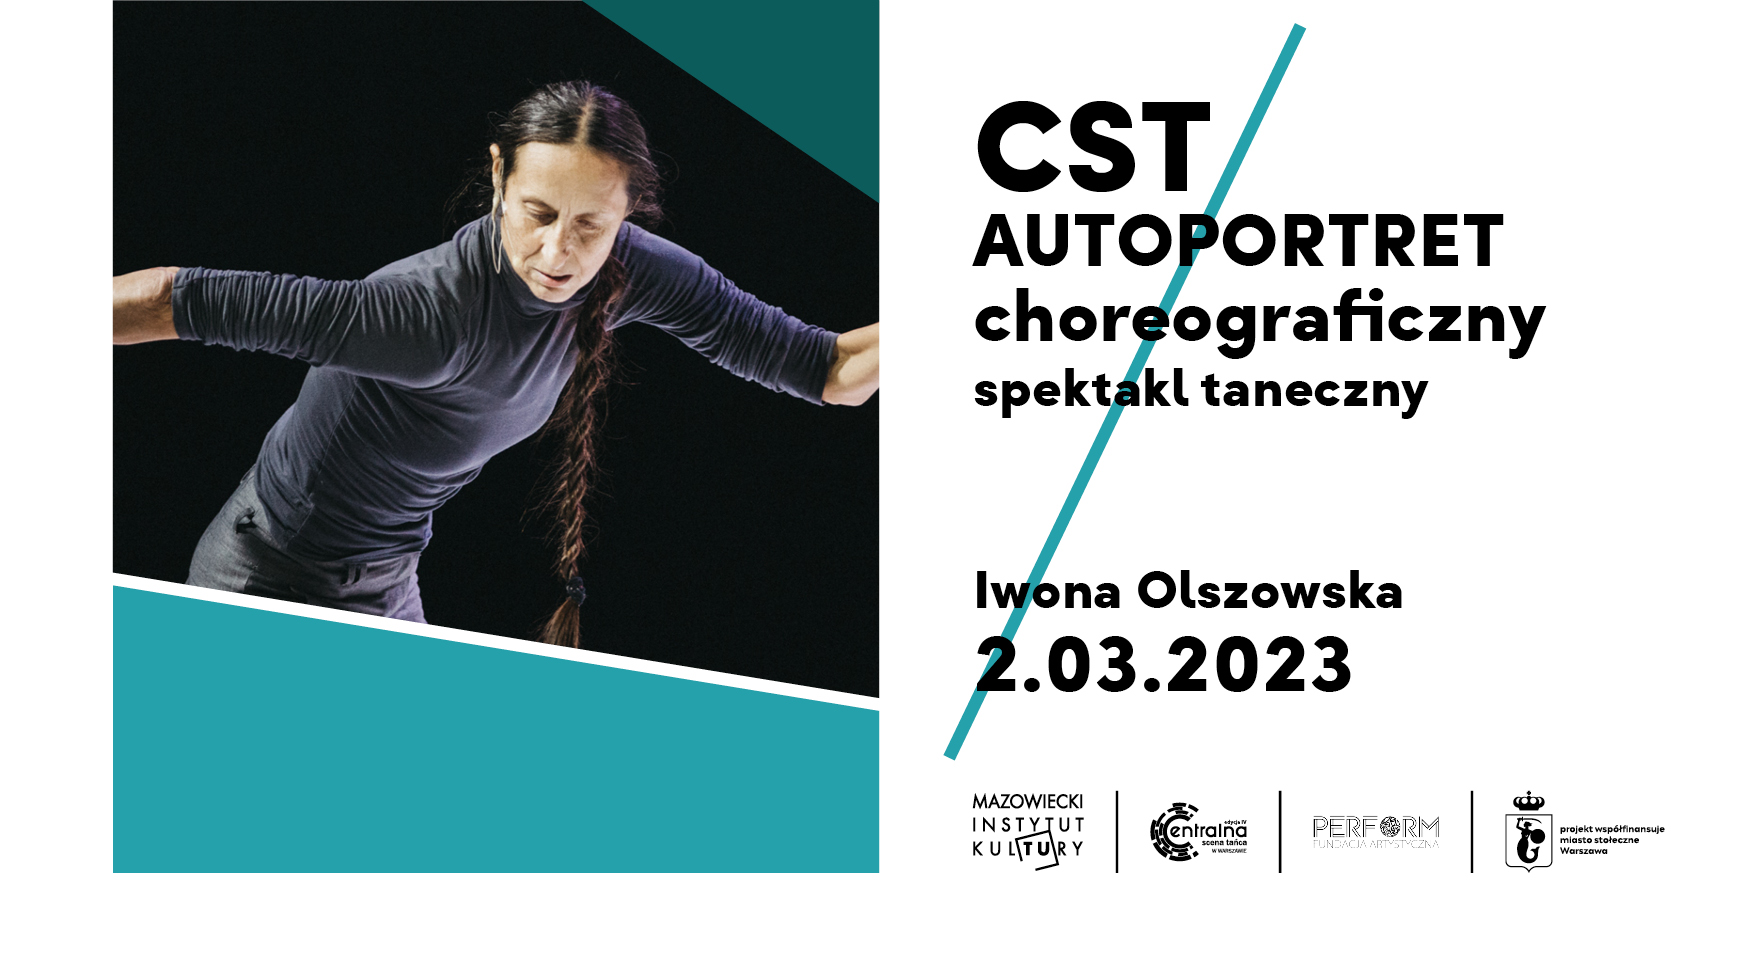 Grafika reklamująca wydarzenie pod tytułem CST Autoportret Choreograficzny, spektakl Taneczny Iwona Olszowska, 2 marca 2023